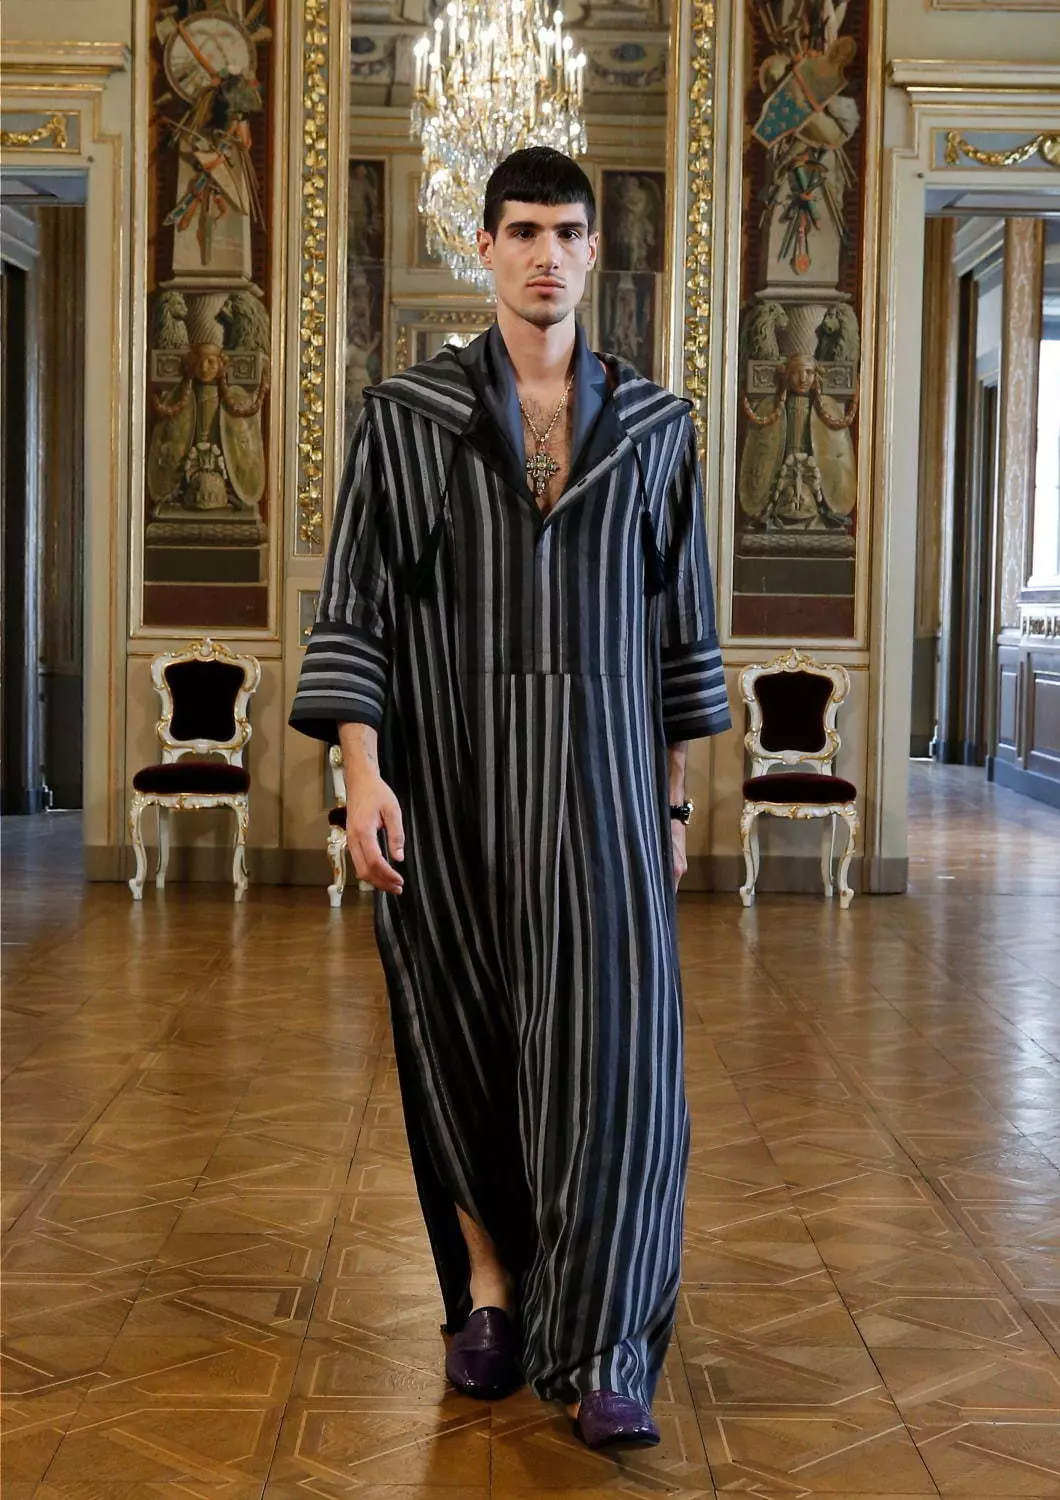 Dolce & Gabbana Alta Sartoria Menswear Collection Lulju 2020 53602_23